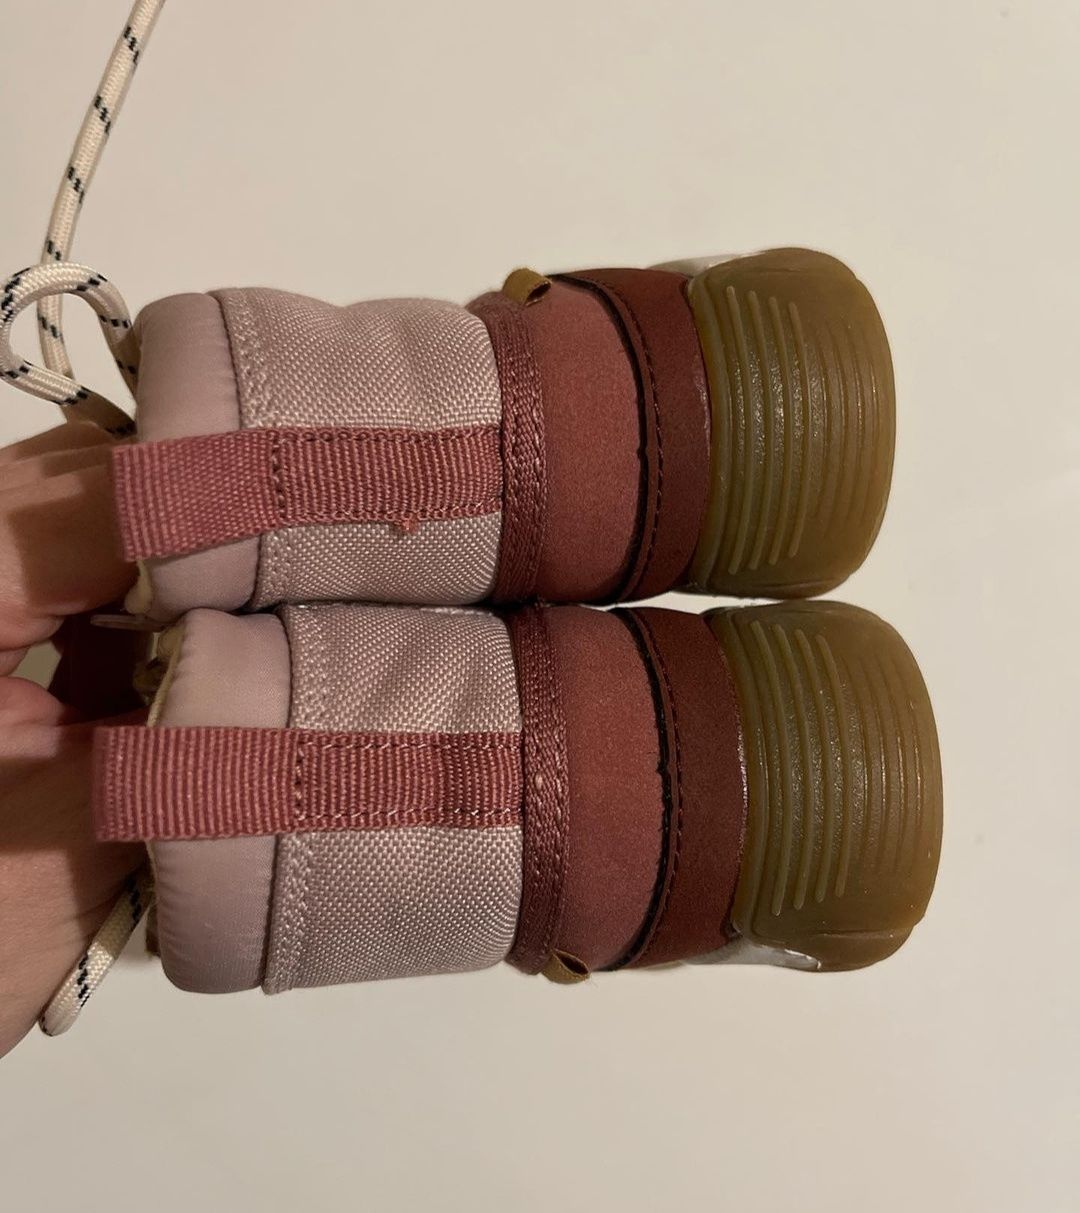 Новенькі Ботінки від Zara Демі - Весна , Осінь 20р, 12 см стєлька!